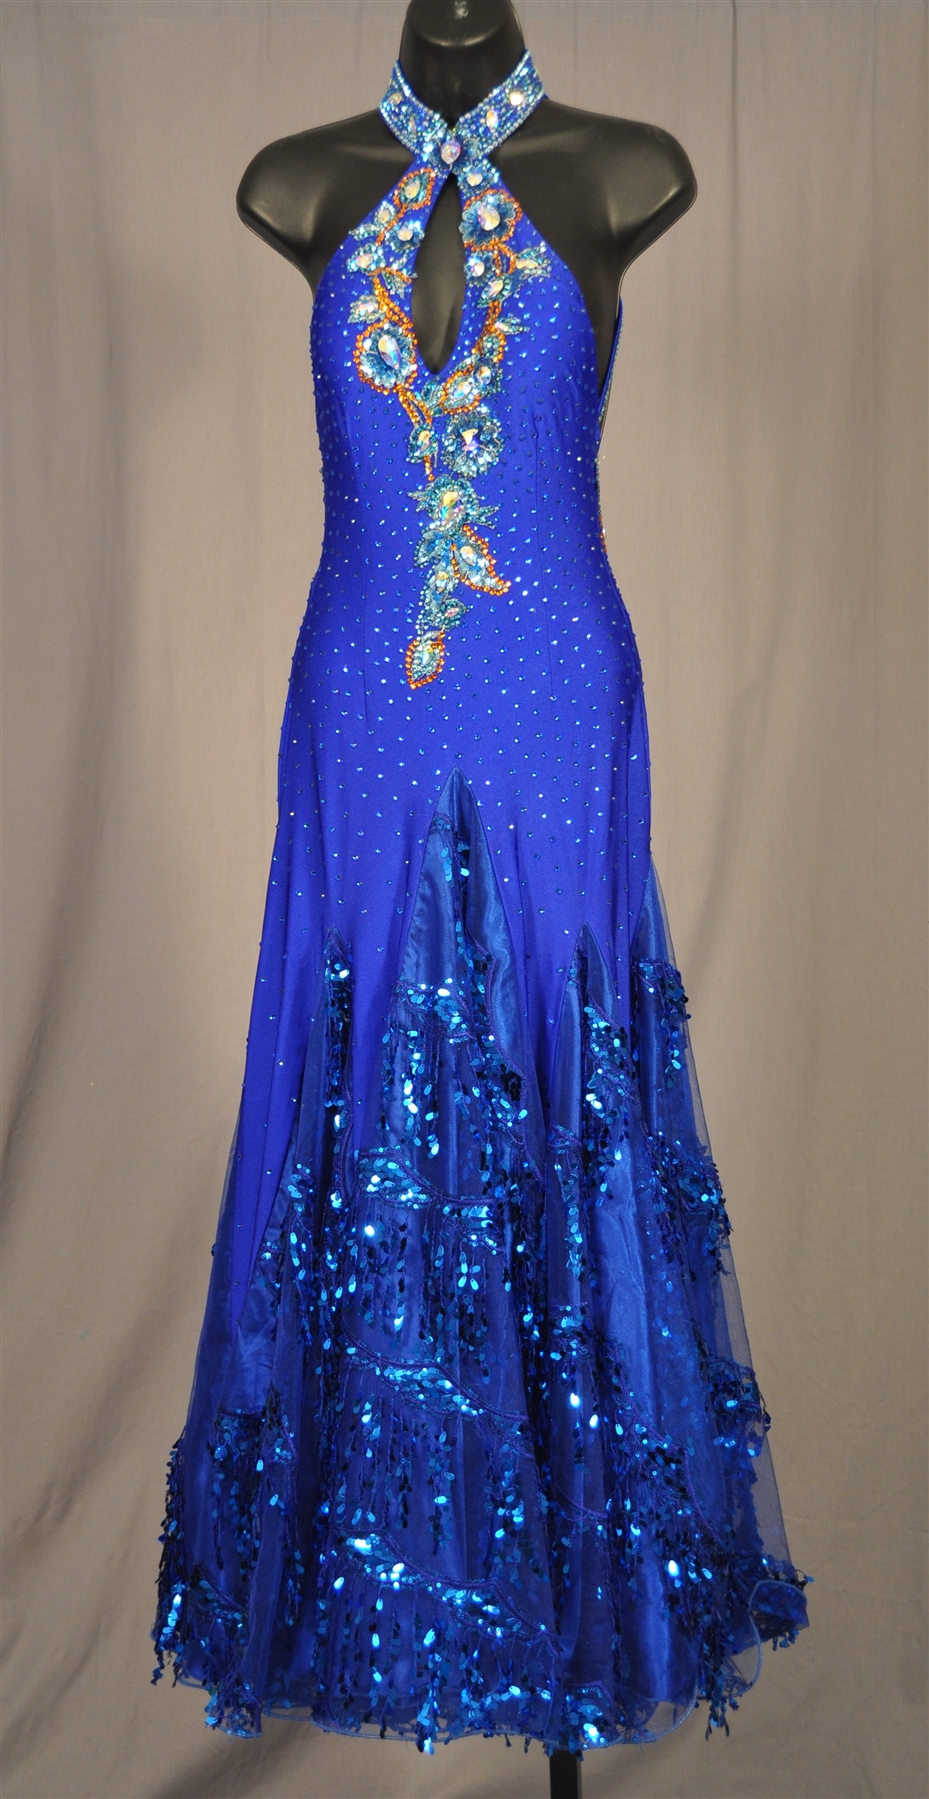 Elegant Royal Blue Ballroom Dress with Sequin Fringe Skirt